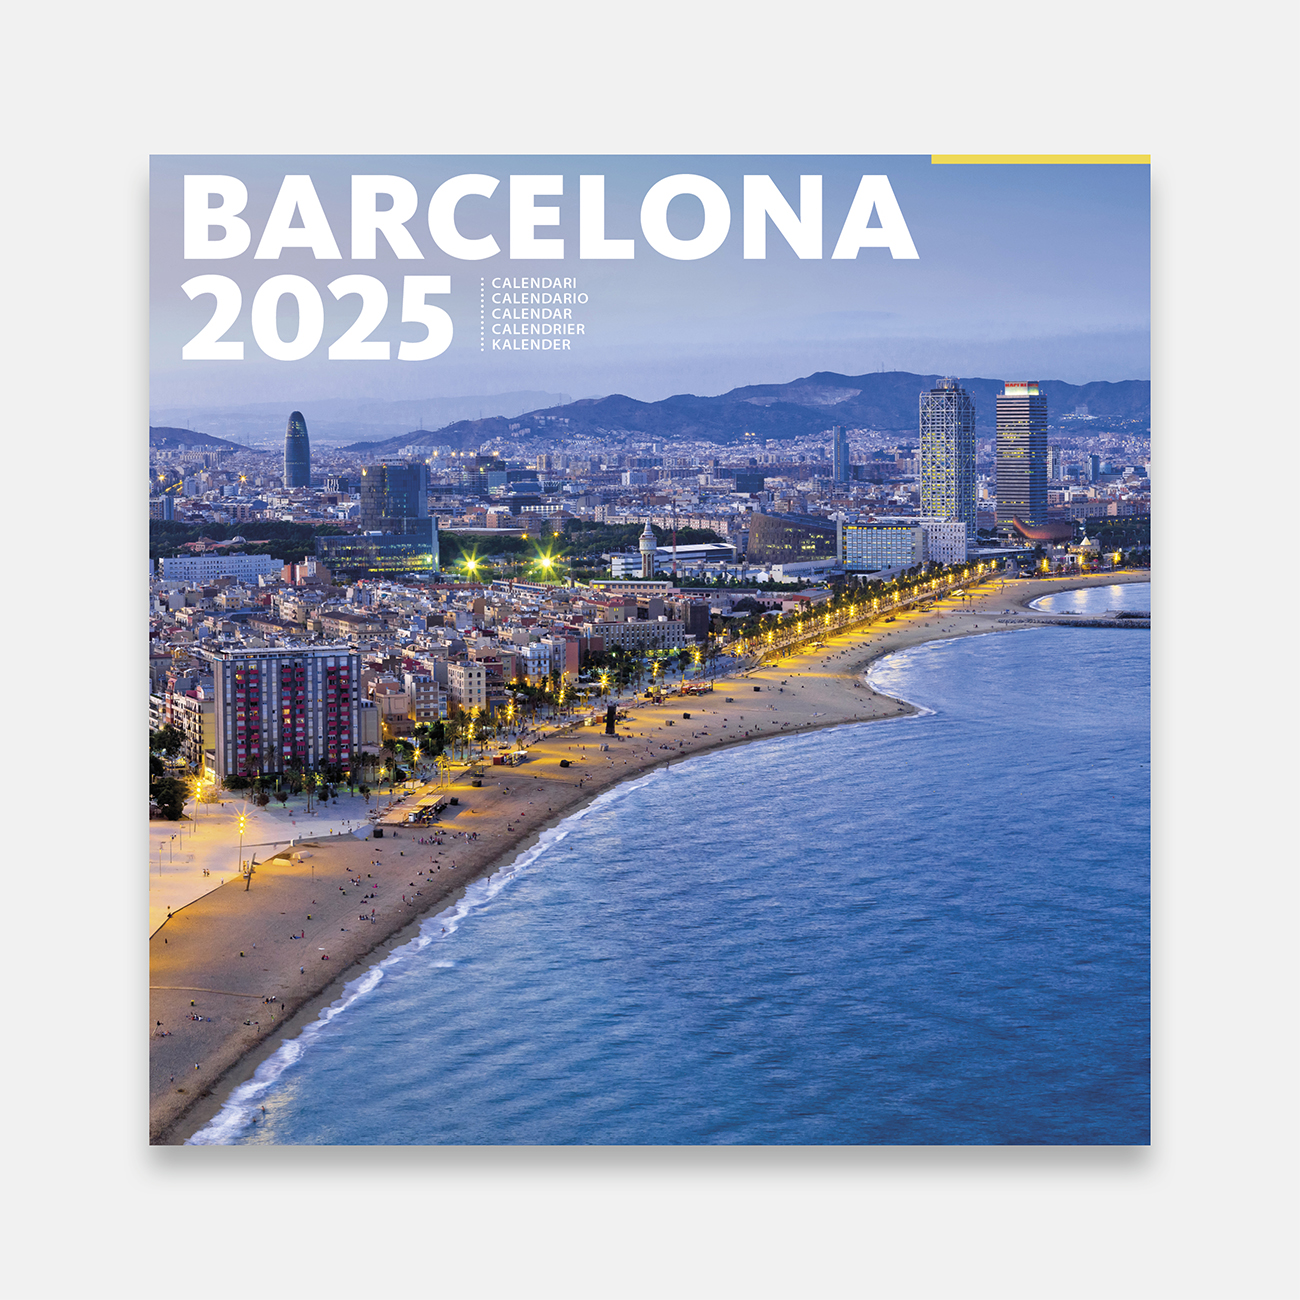 Calendari 2025 Barcelona 25b1 calendario pared 2025 barcelona